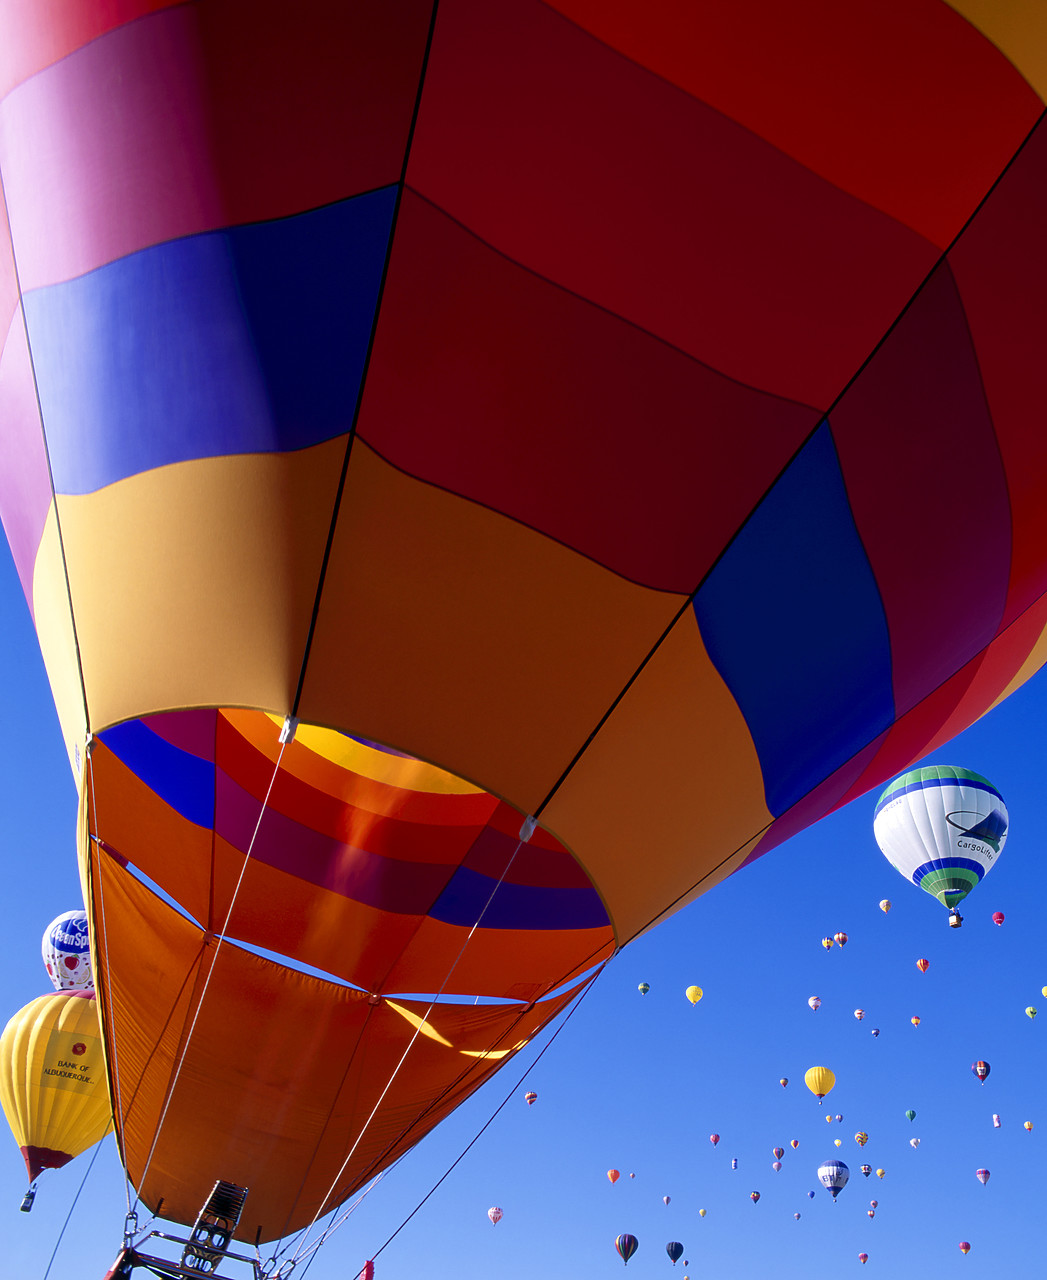 #990578-1 - Hot Air Balloons, Albuquerque, New Mexico, USA